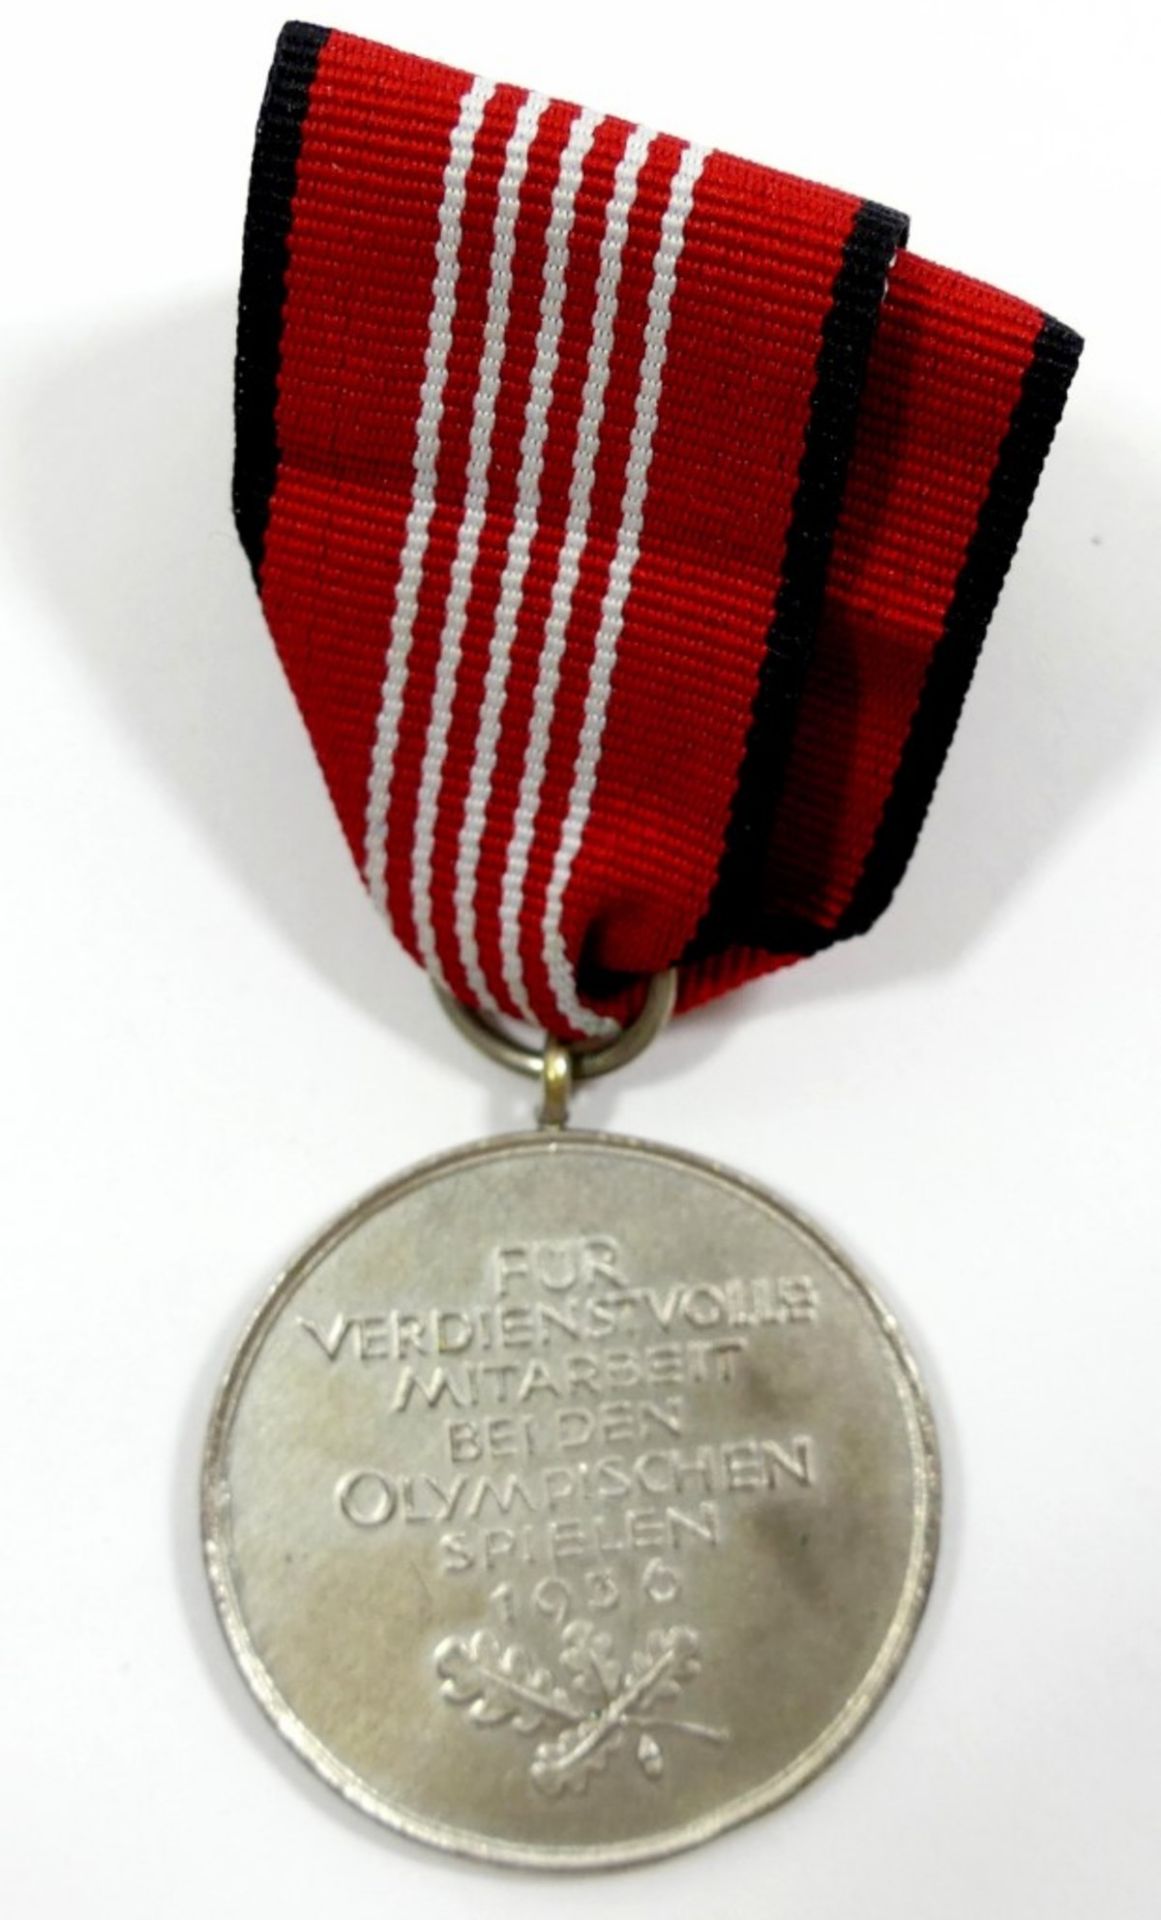 Medaille "Für verdienstvolle Mitarbeit bei den Olympischen Spielen 1936", versilbert